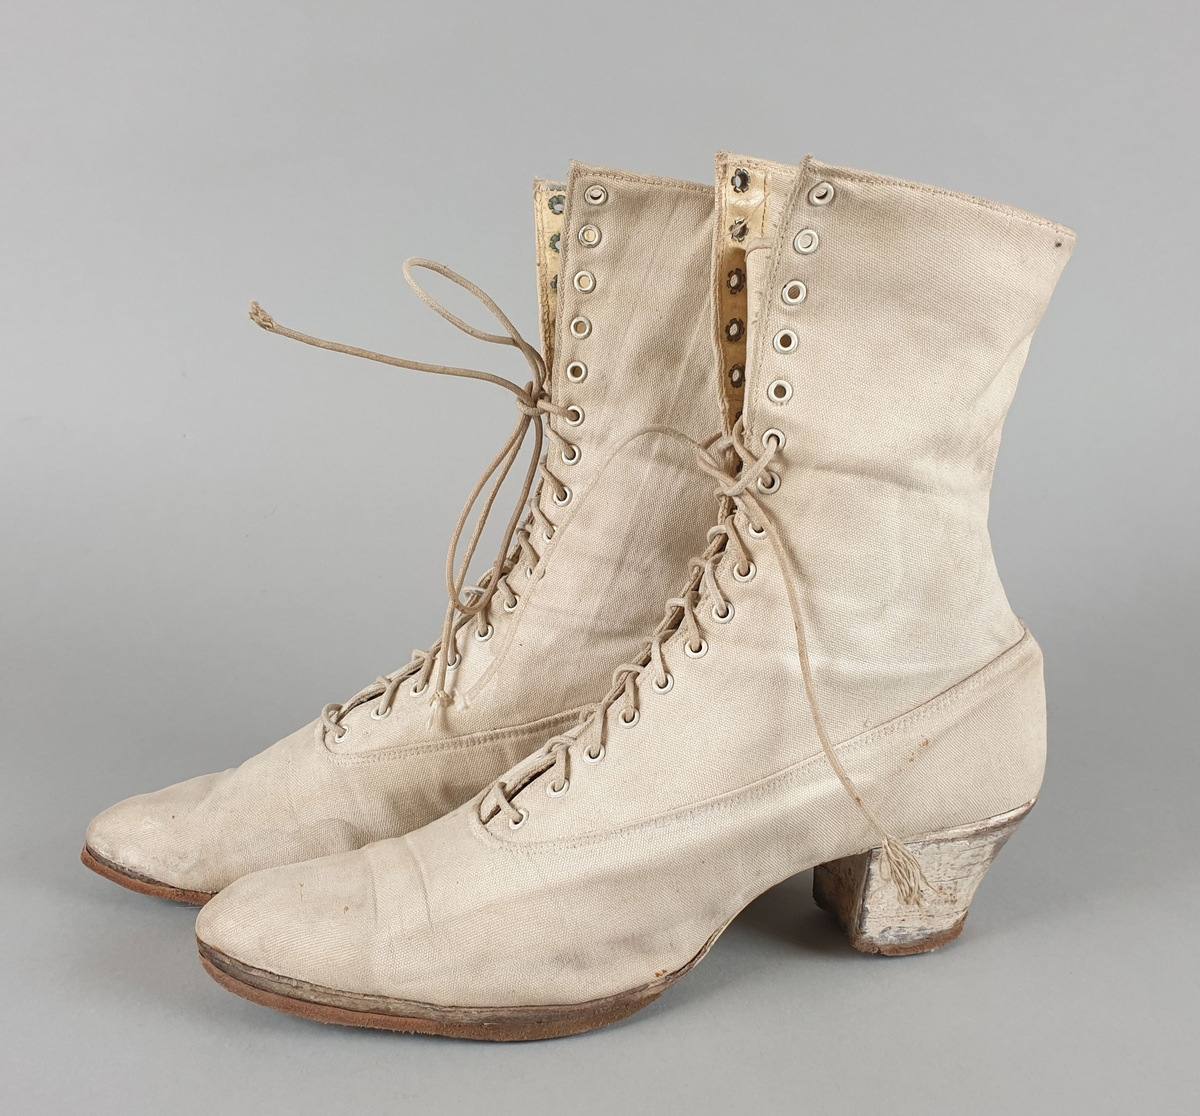 Hvite damestøvletter av lerret, med snøring foran og moderat høye hæler.